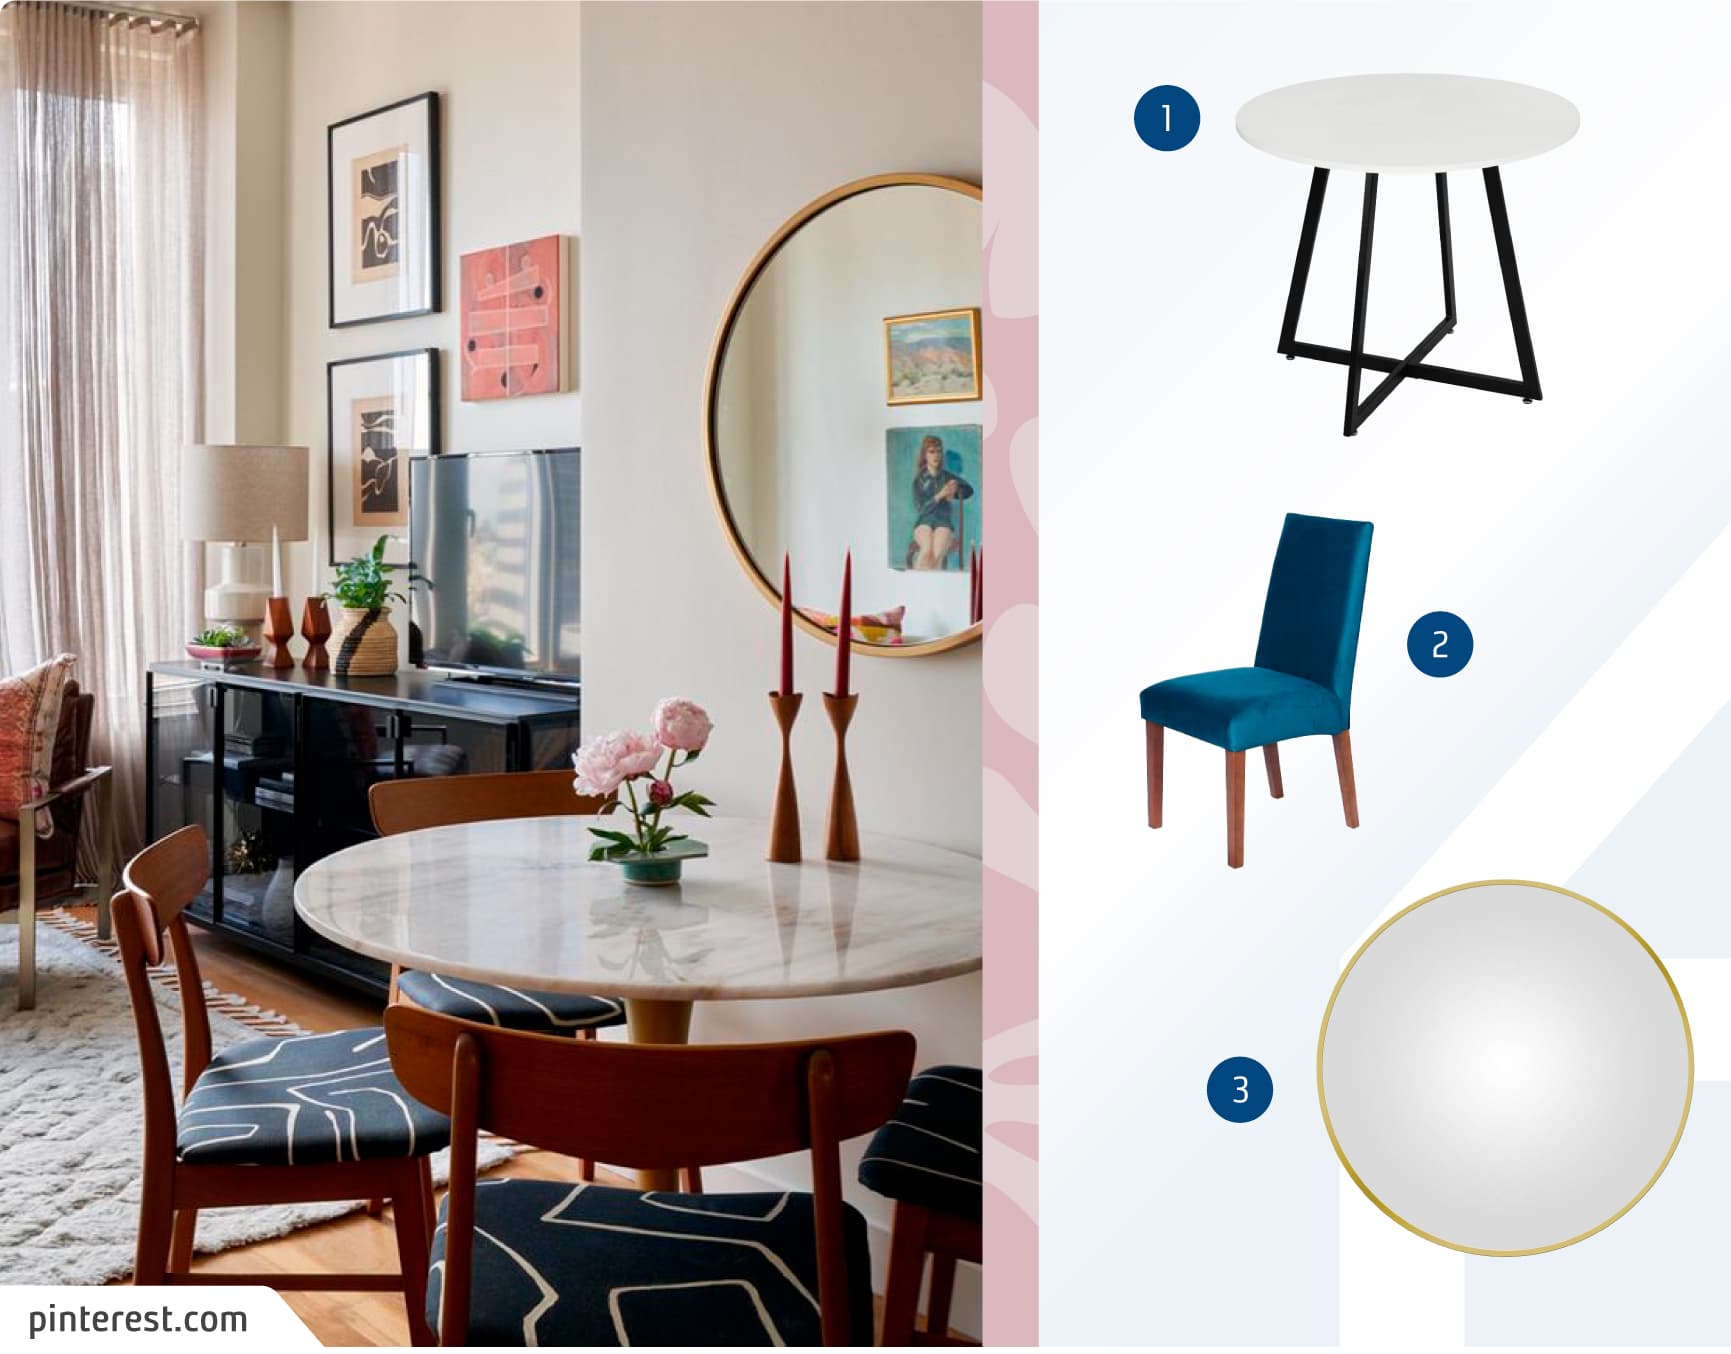 Living comedor, con una mesa redonda blanca con cuatro sillas de madera con asientos azules. La mesa está apoyada en una pared donde está colgado un espejo redondo con marco dorado.